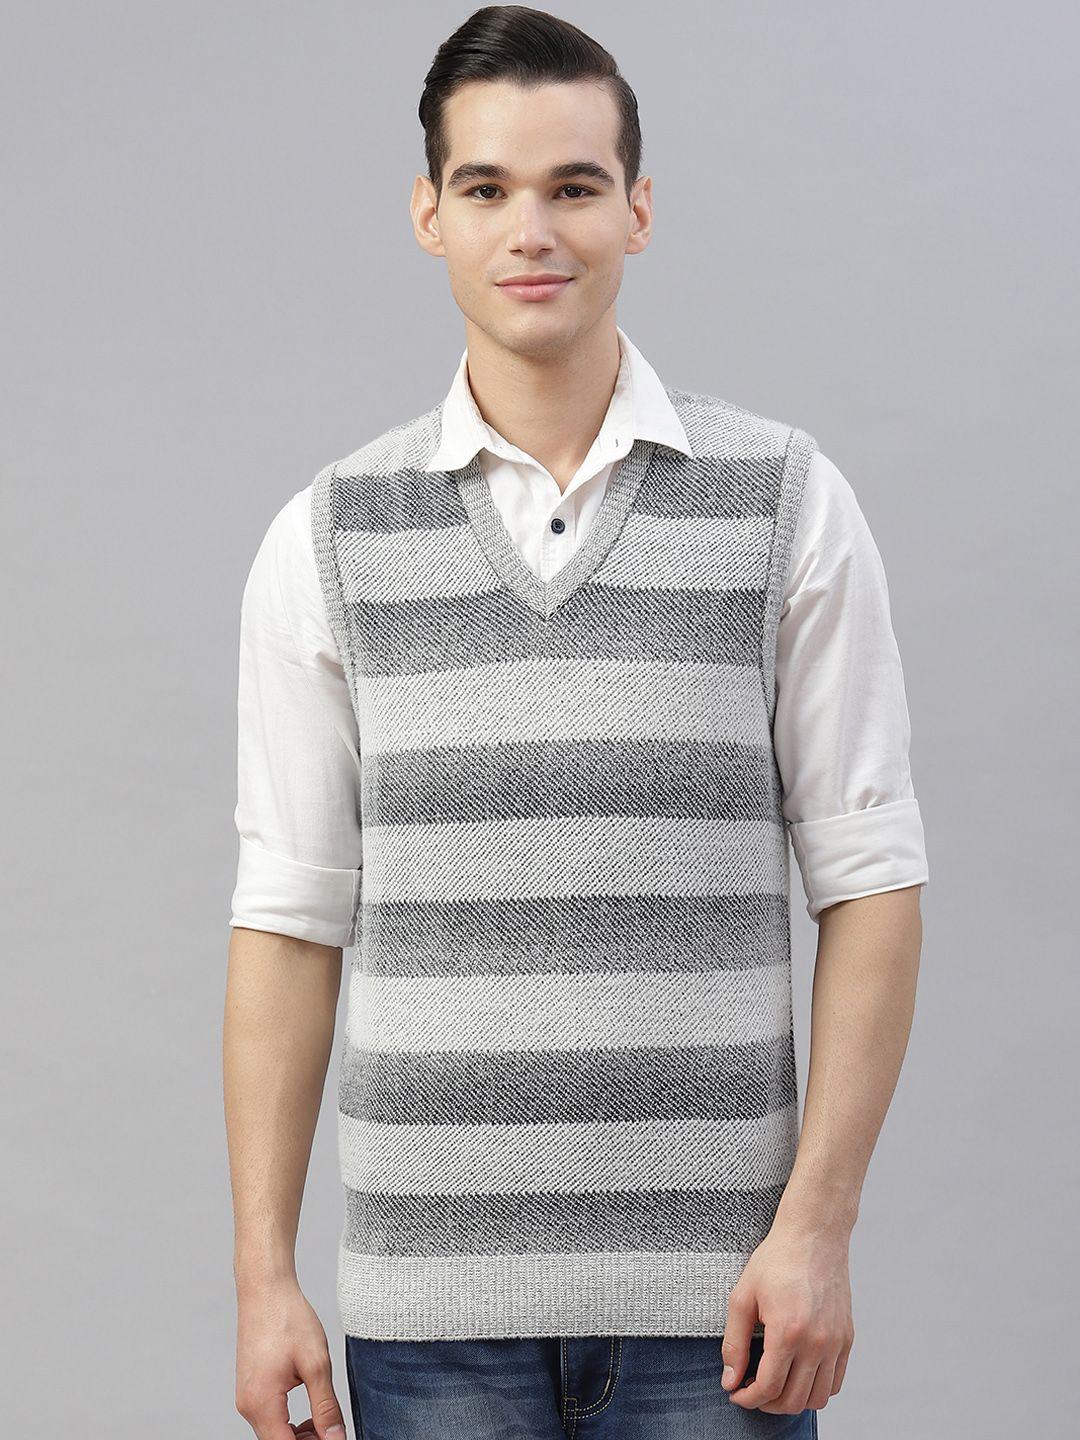 pierre carlo men grey striped sweater vest